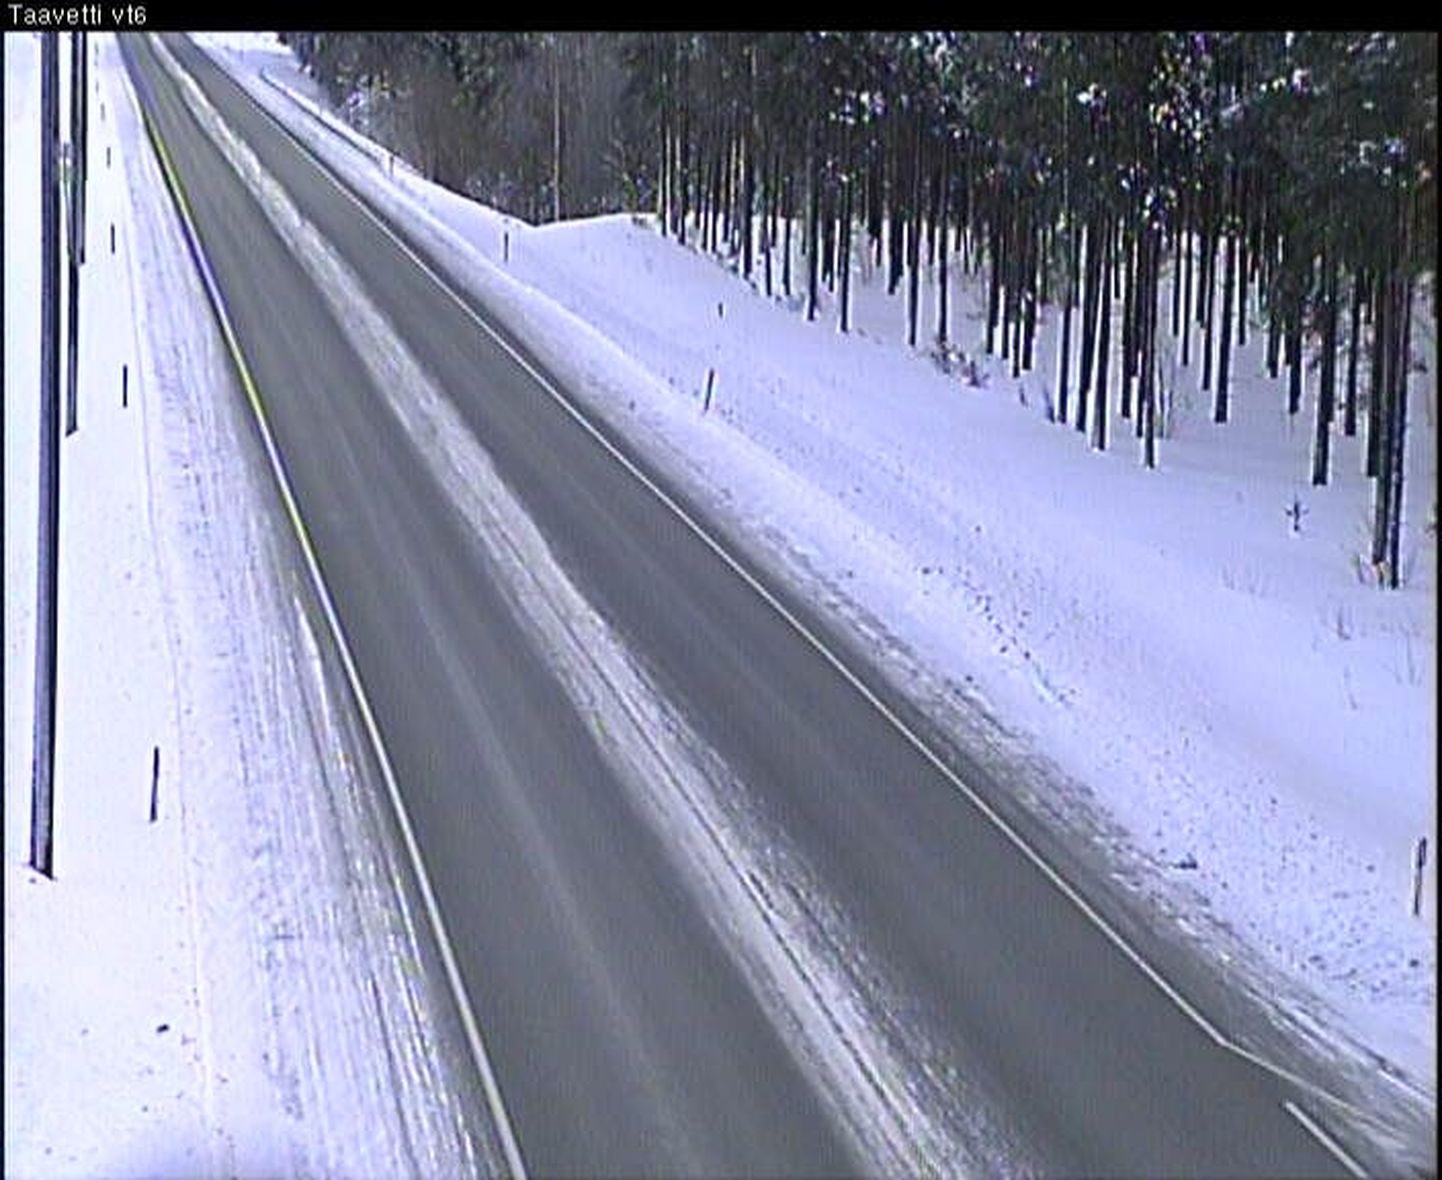 Maantee valvekaamerast saadud pilt Luumäki vallas Lappeenrantasse suunduval maanteel kell 09.57, mil külma oli 25,7 kraadi.